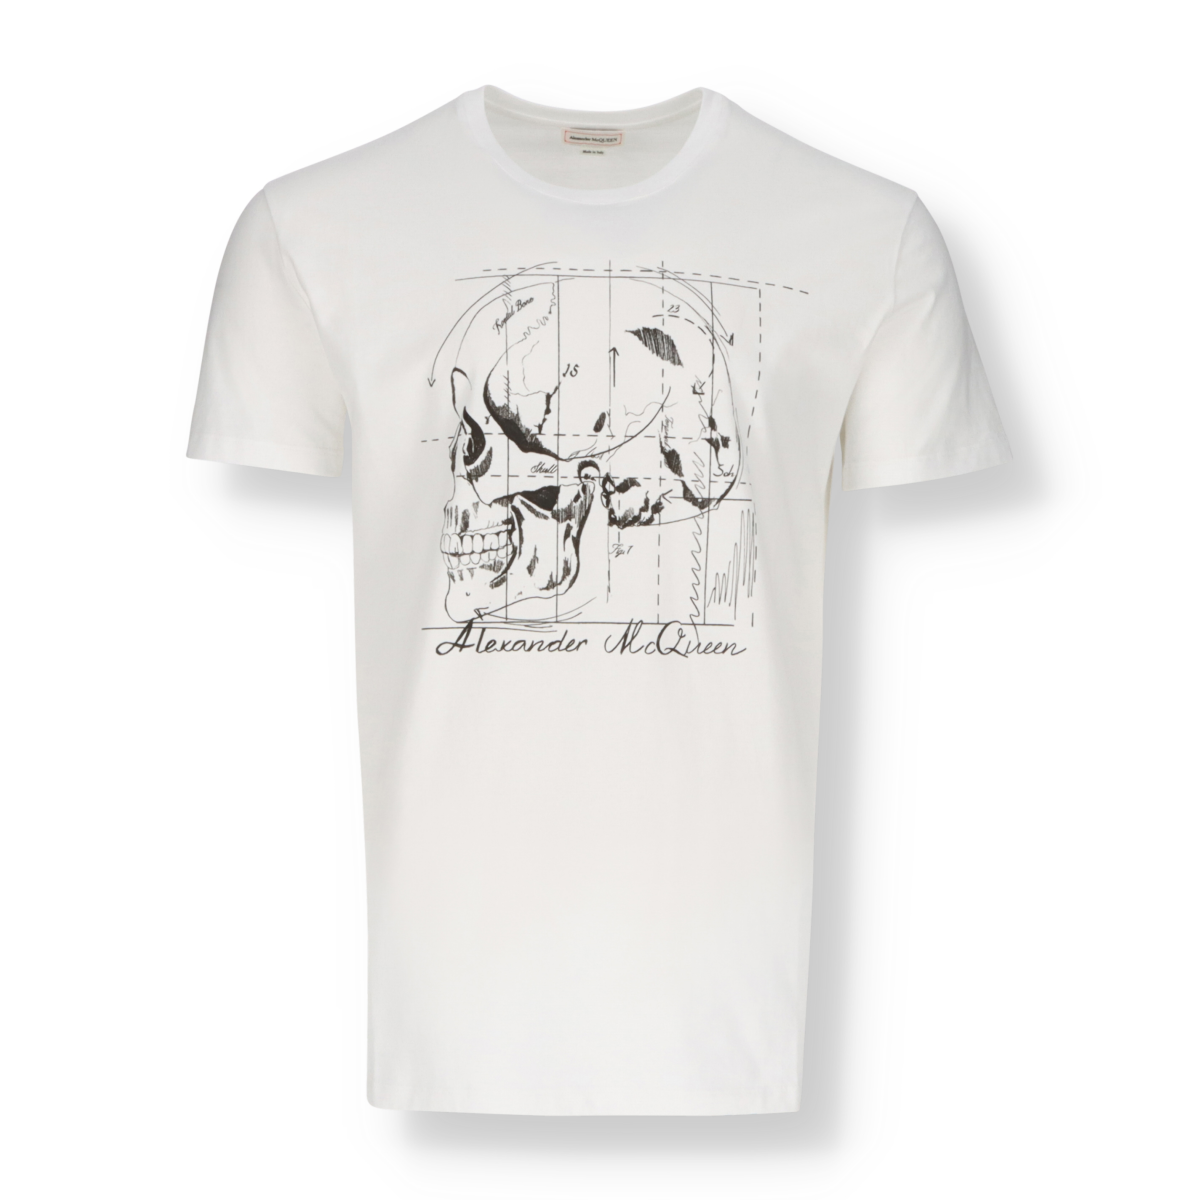 T-Shirt Alexander McQueen design